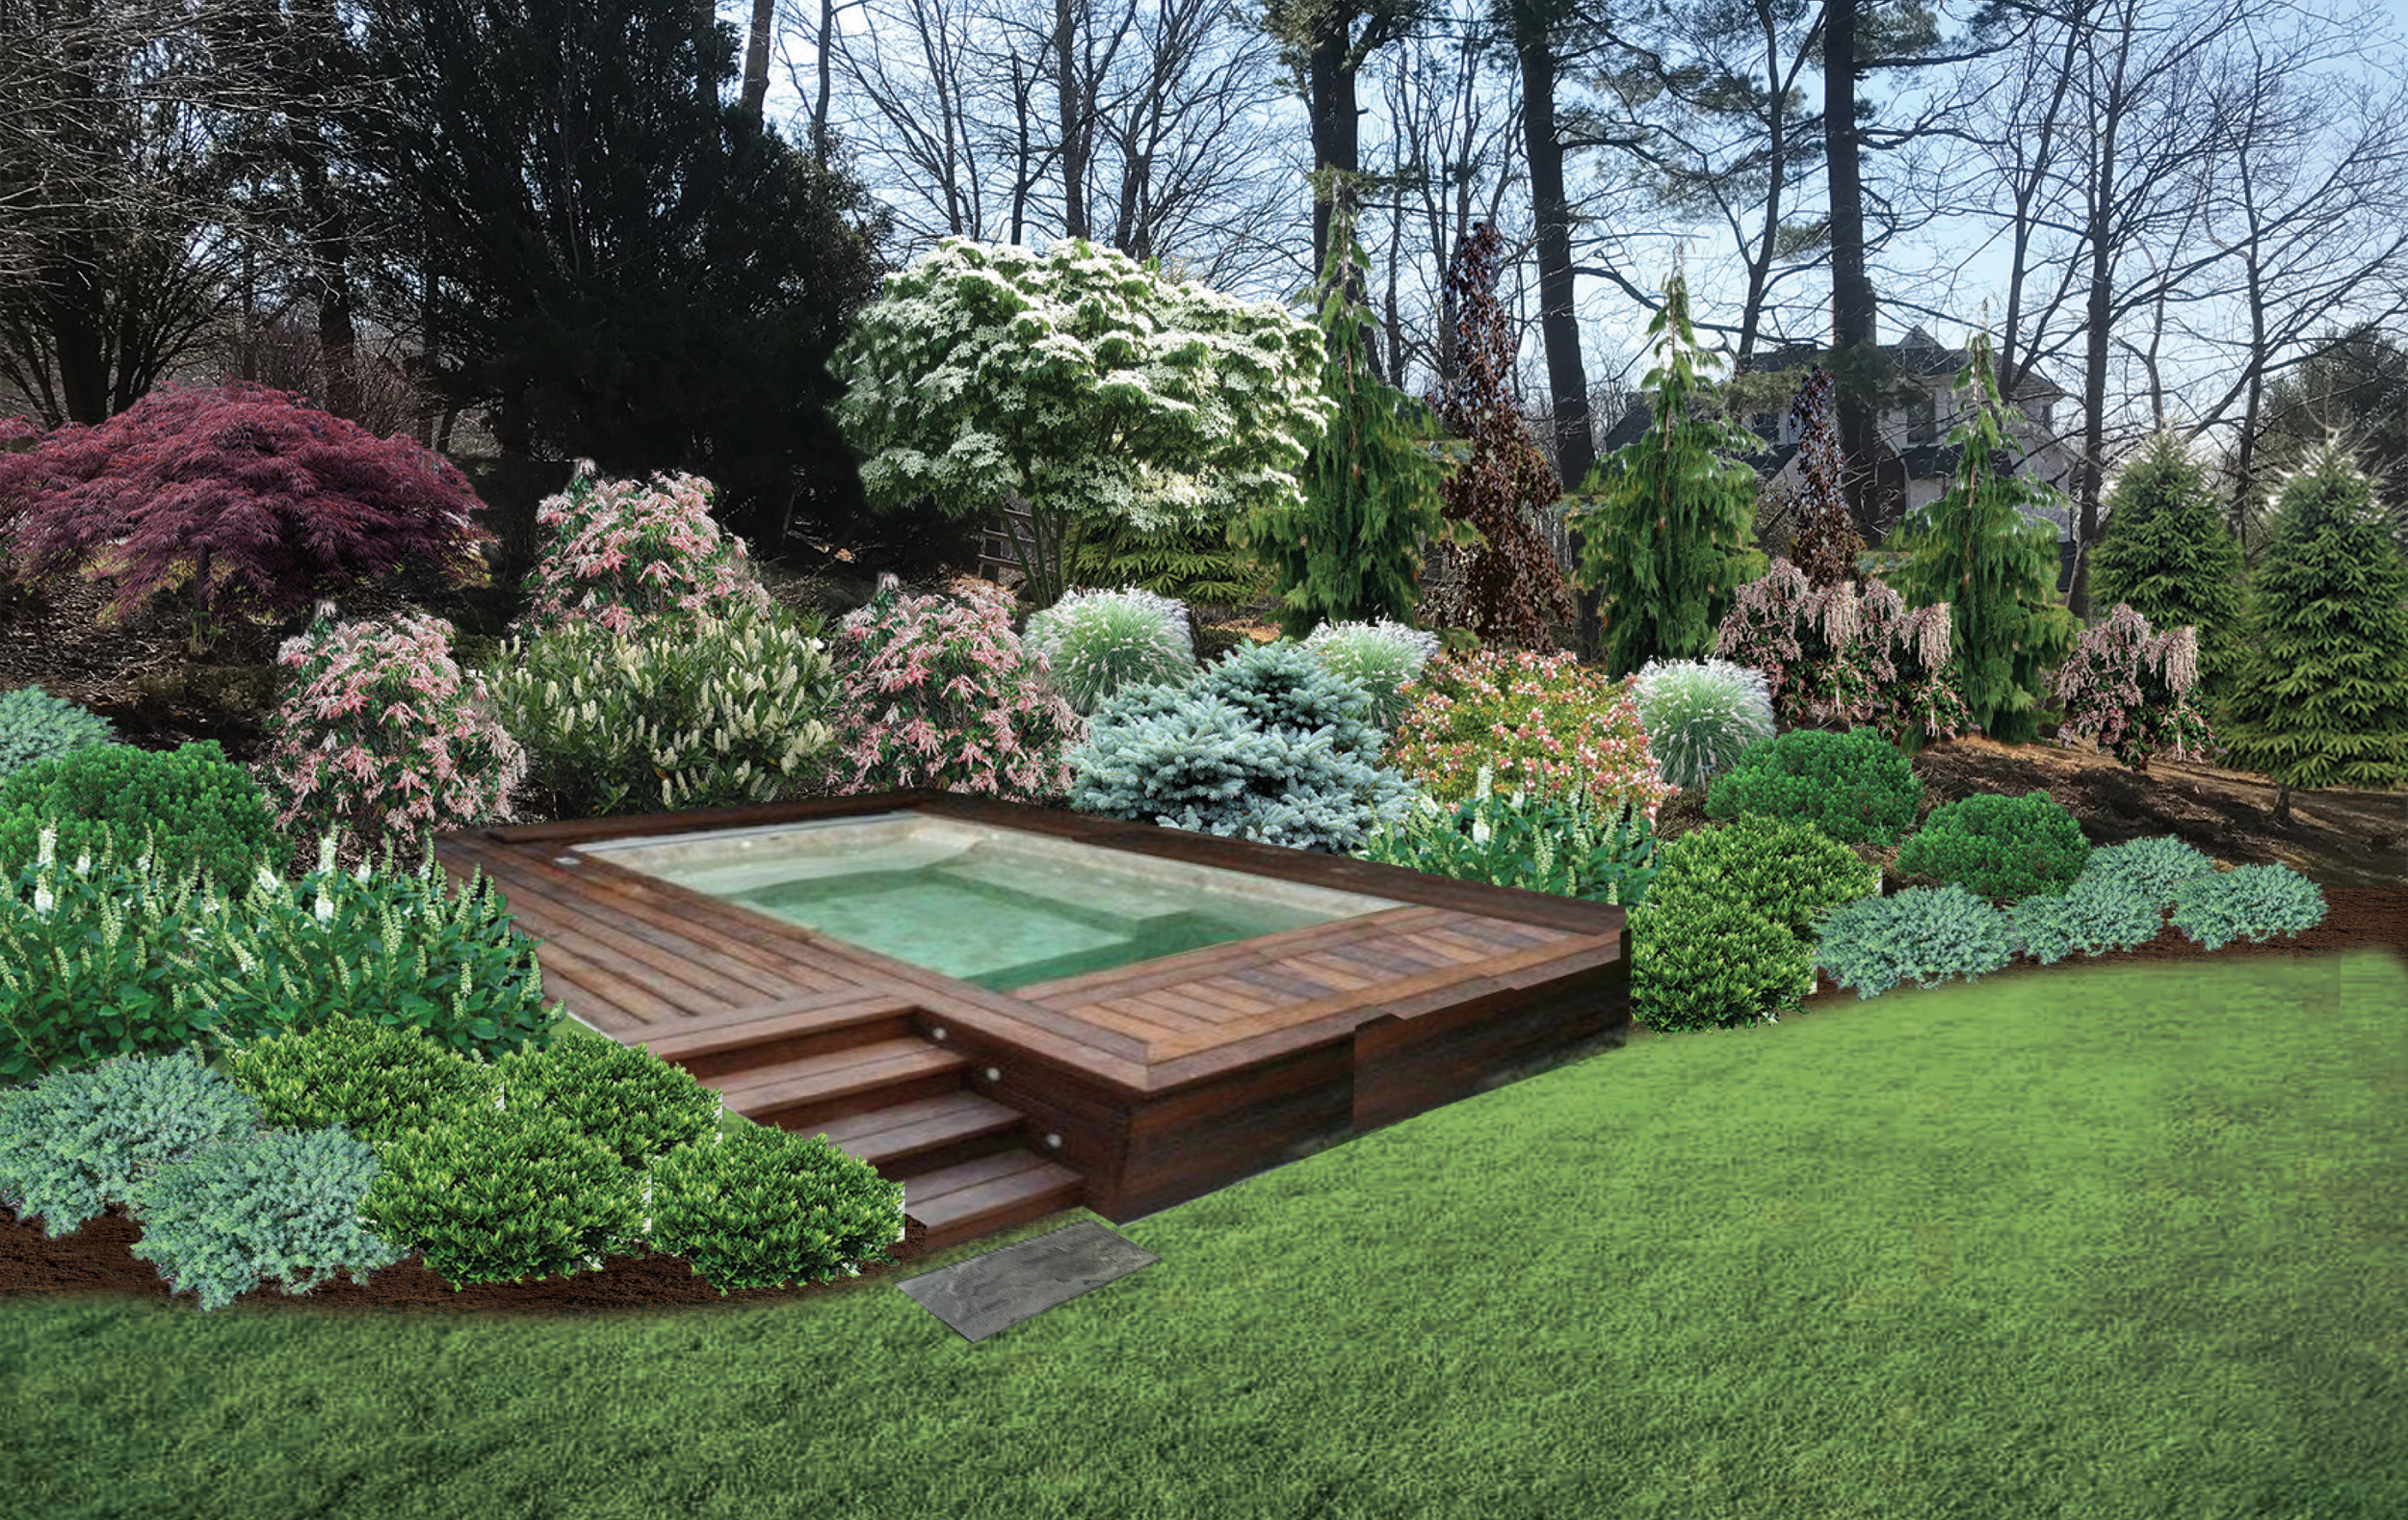 landscape-design-deck-hot-tub-jacuzzi-plantings.png